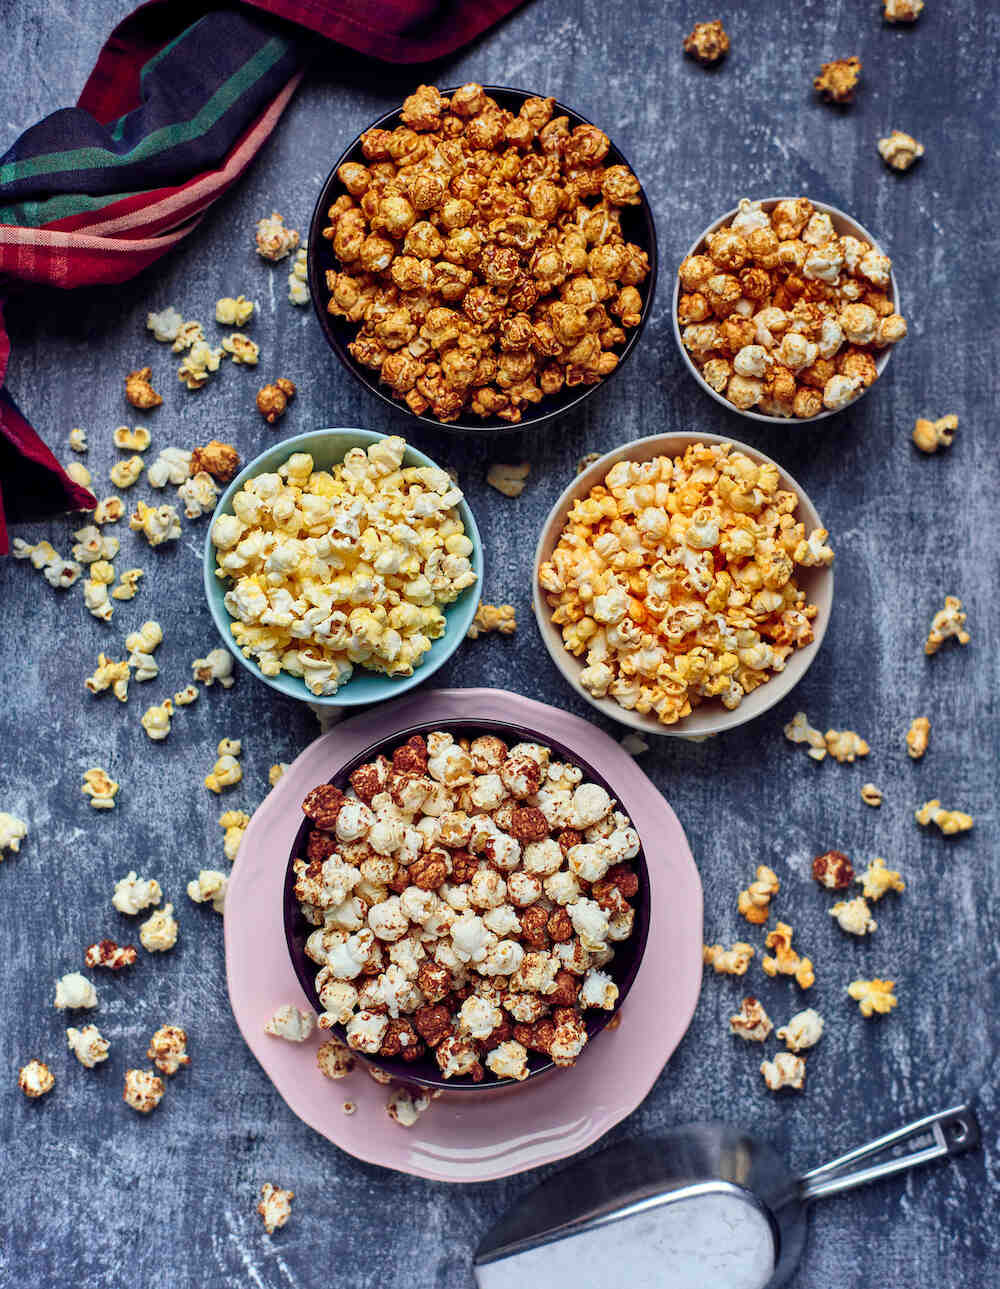 Comment réussir le Popcorn?